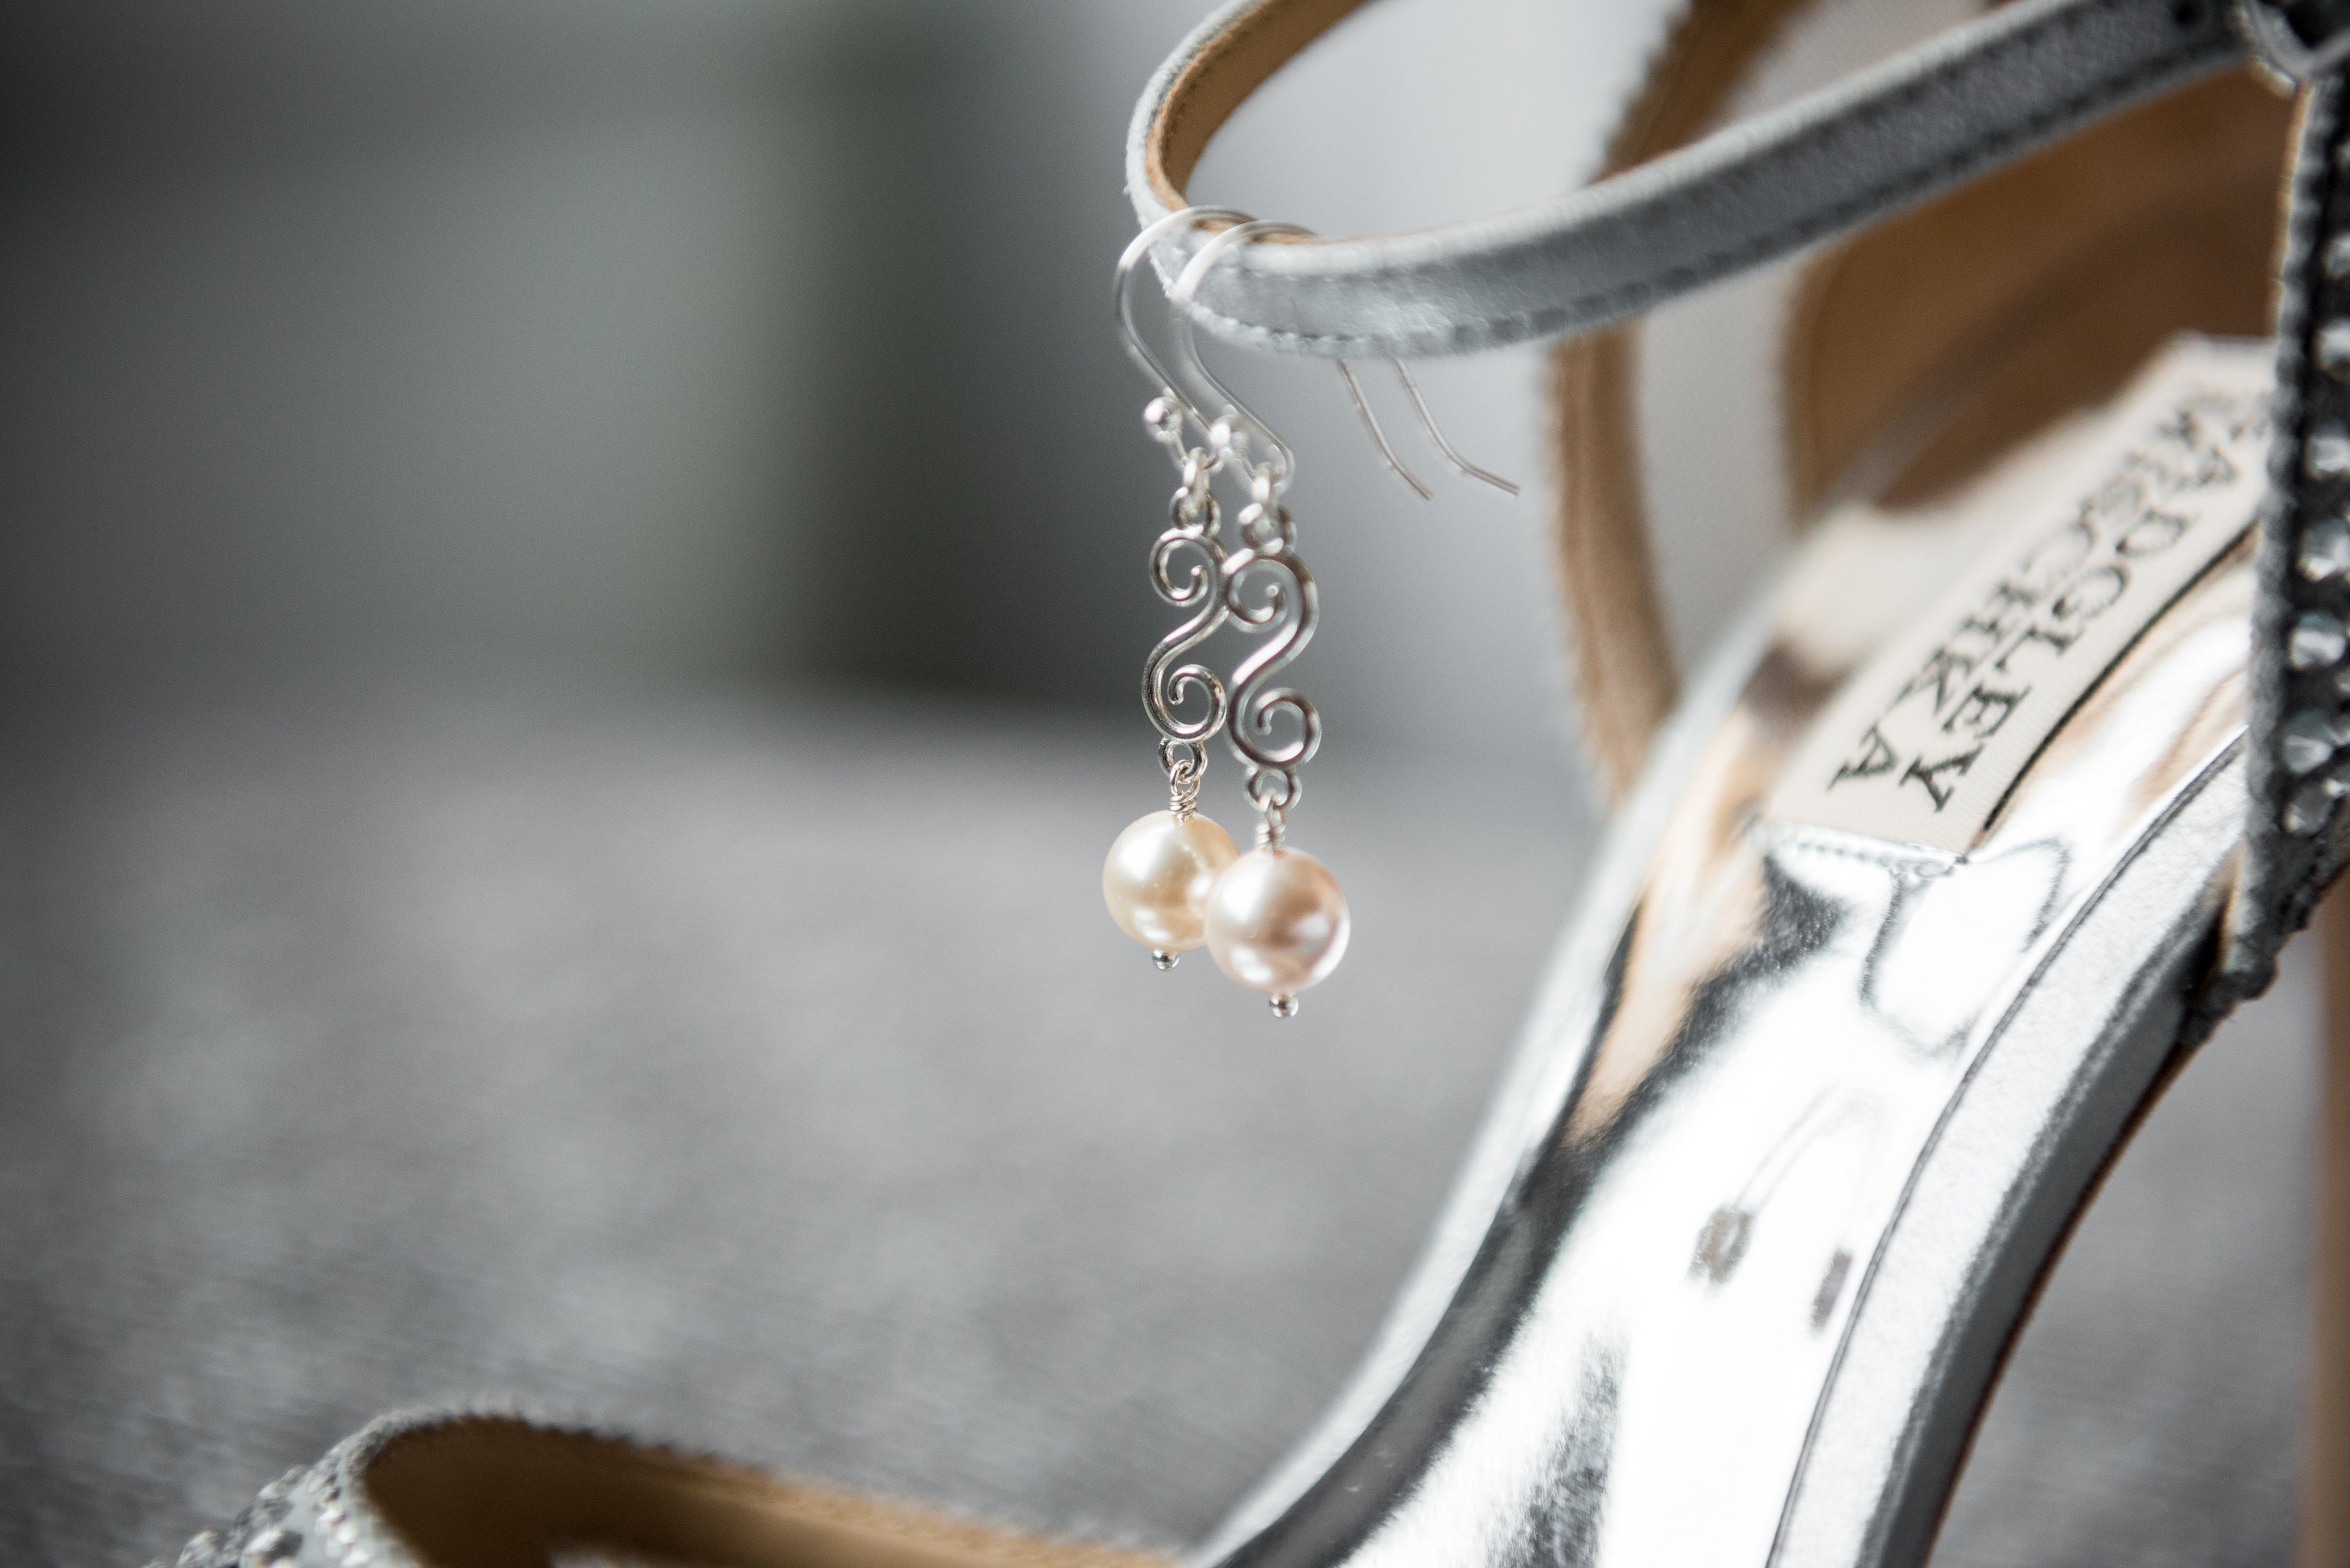 Fancy spiral earrings with drop in sterling silver